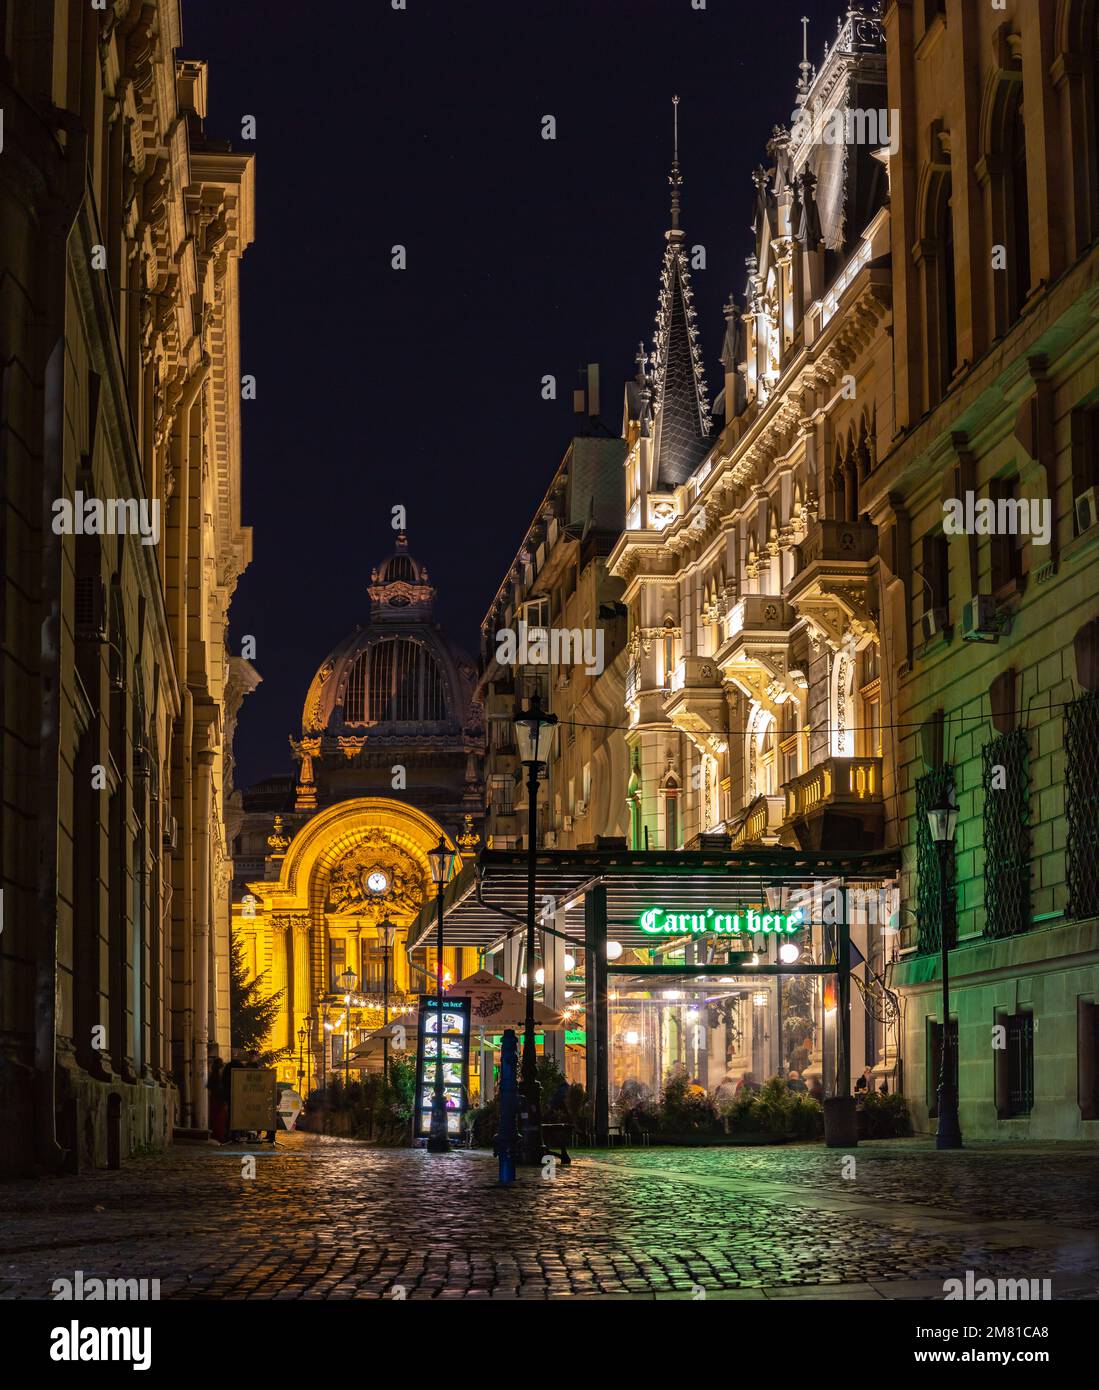 Una foto del Palacio de los depósitos y consignas y la calle Stavropoleos por la noche. Foto de stock